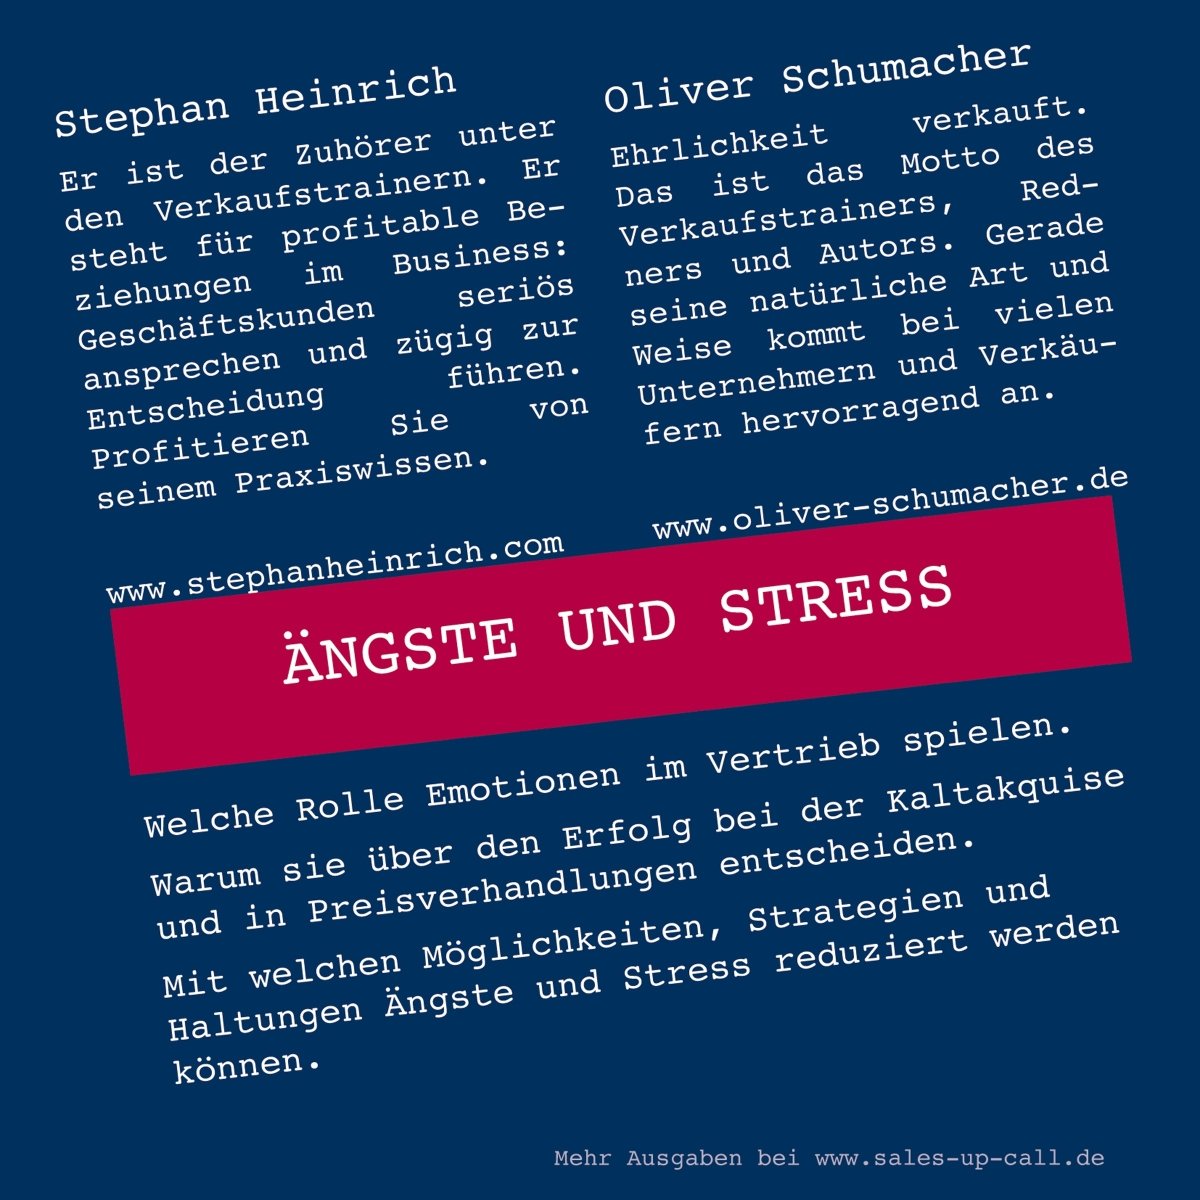 Ängste und Stress - Sales-up-Call - Stephan Heinrich